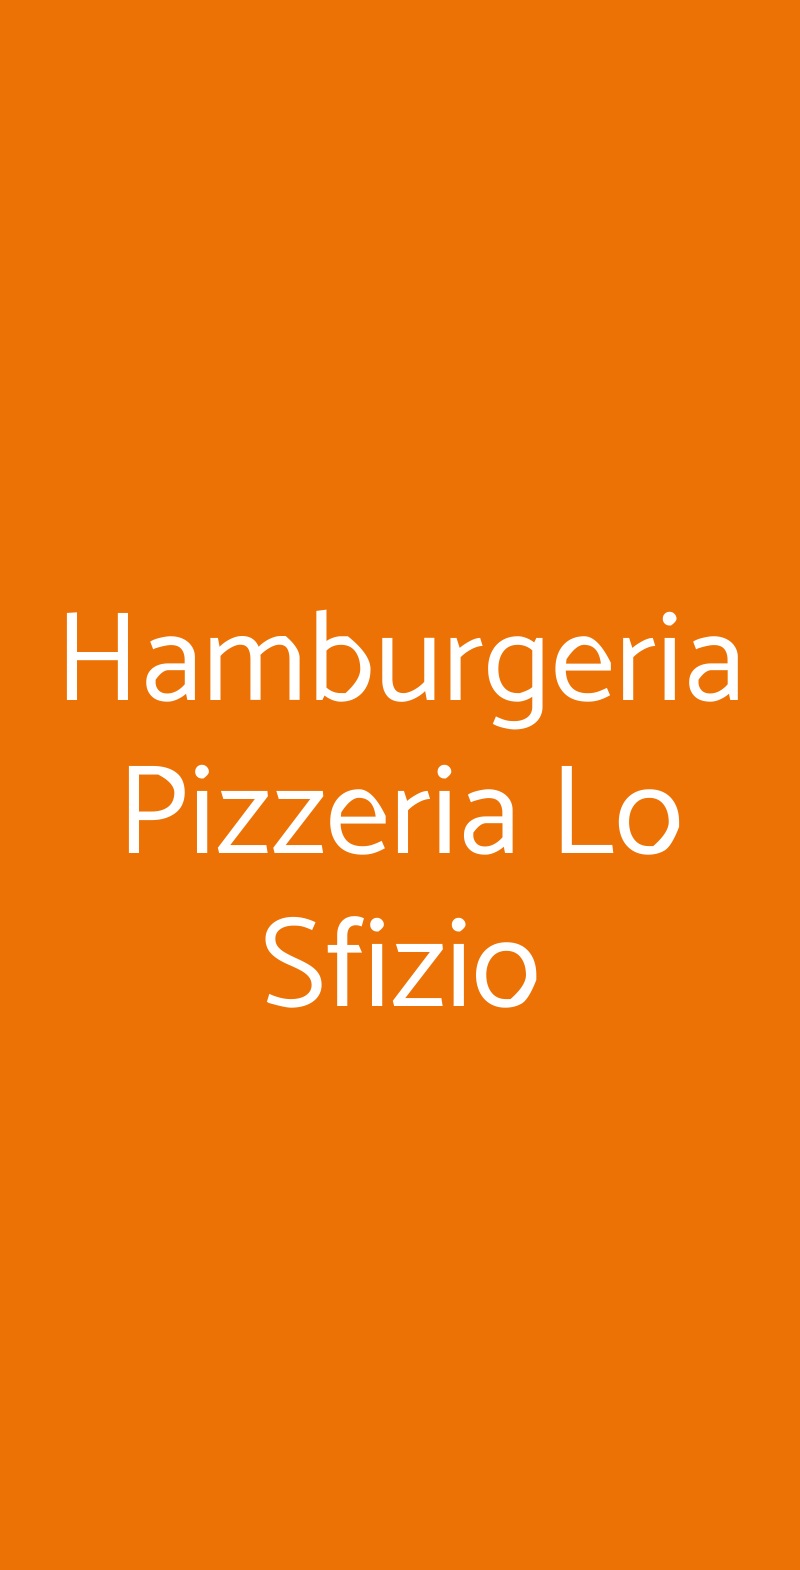 Hamburgeria Pizzeria Lo Sfizio Trieste menù 1 pagina